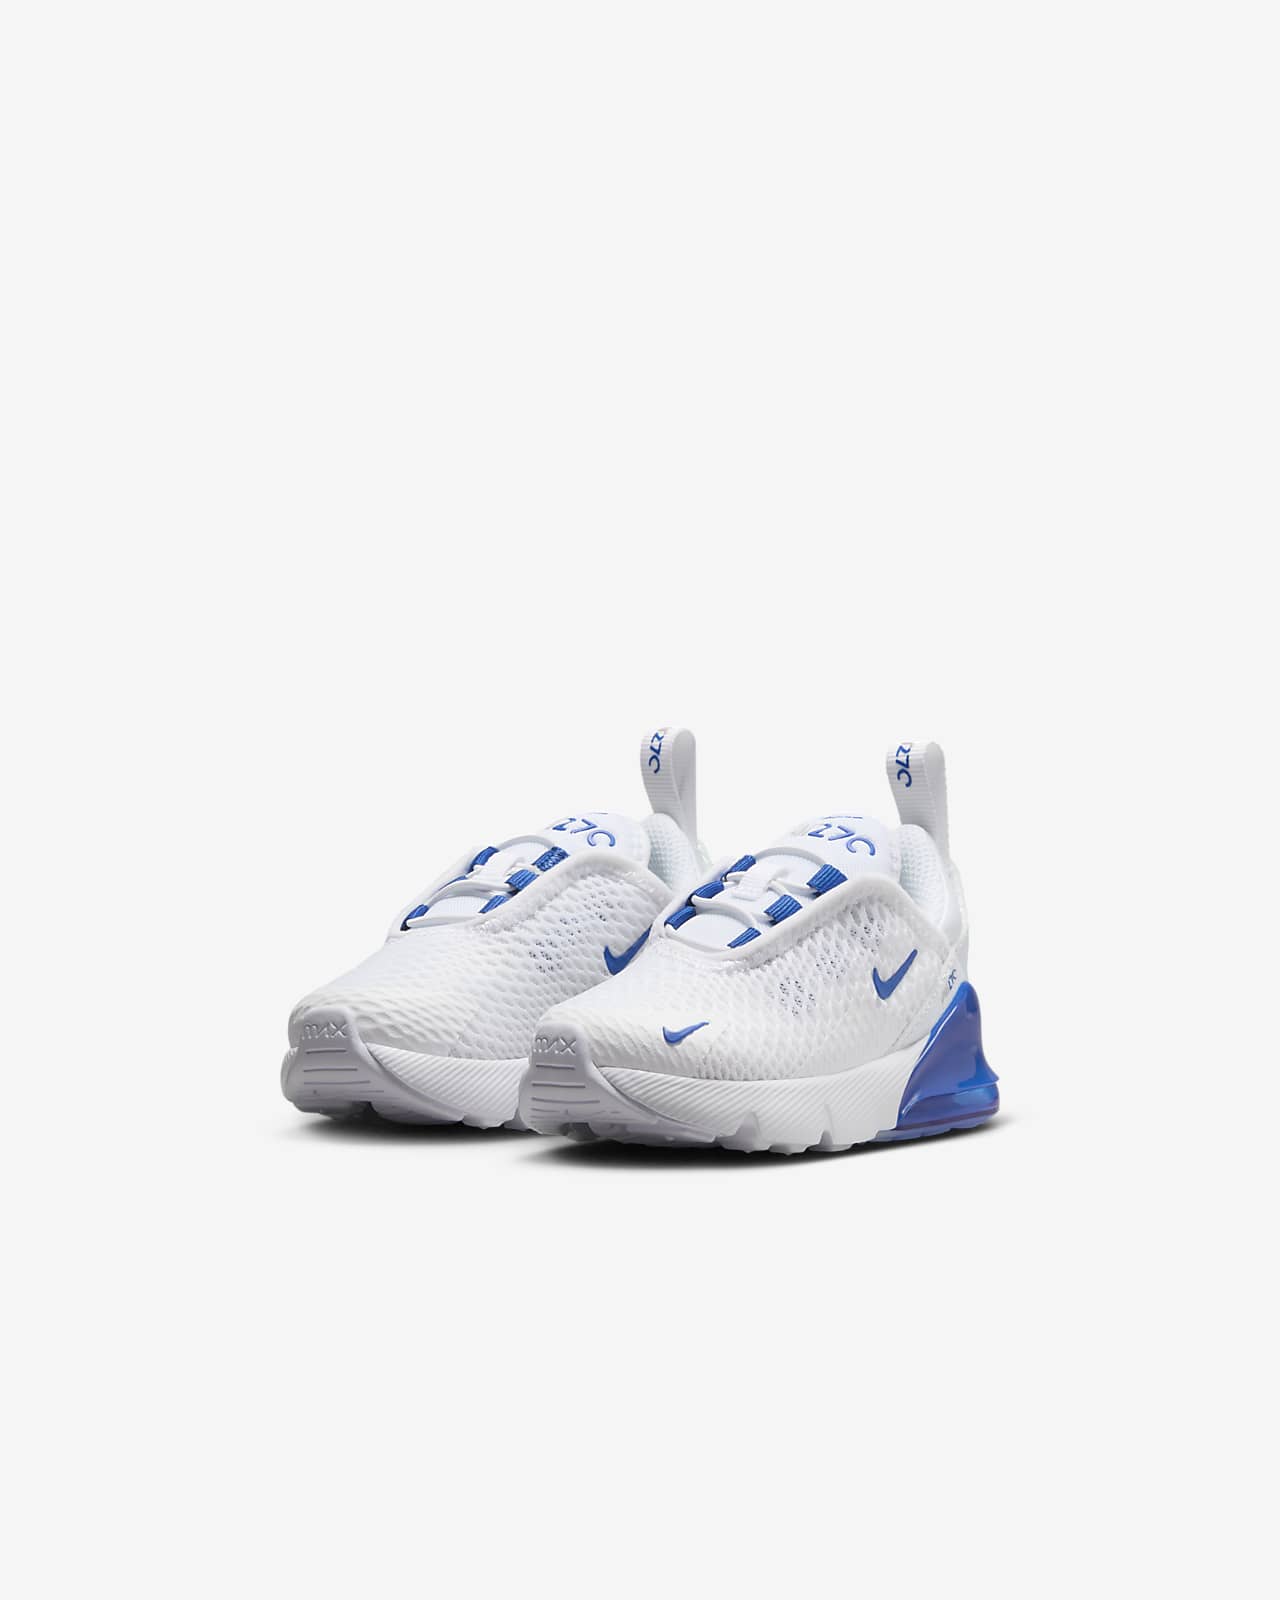 Nike Air Max 270 Baby/Toddler Shoe